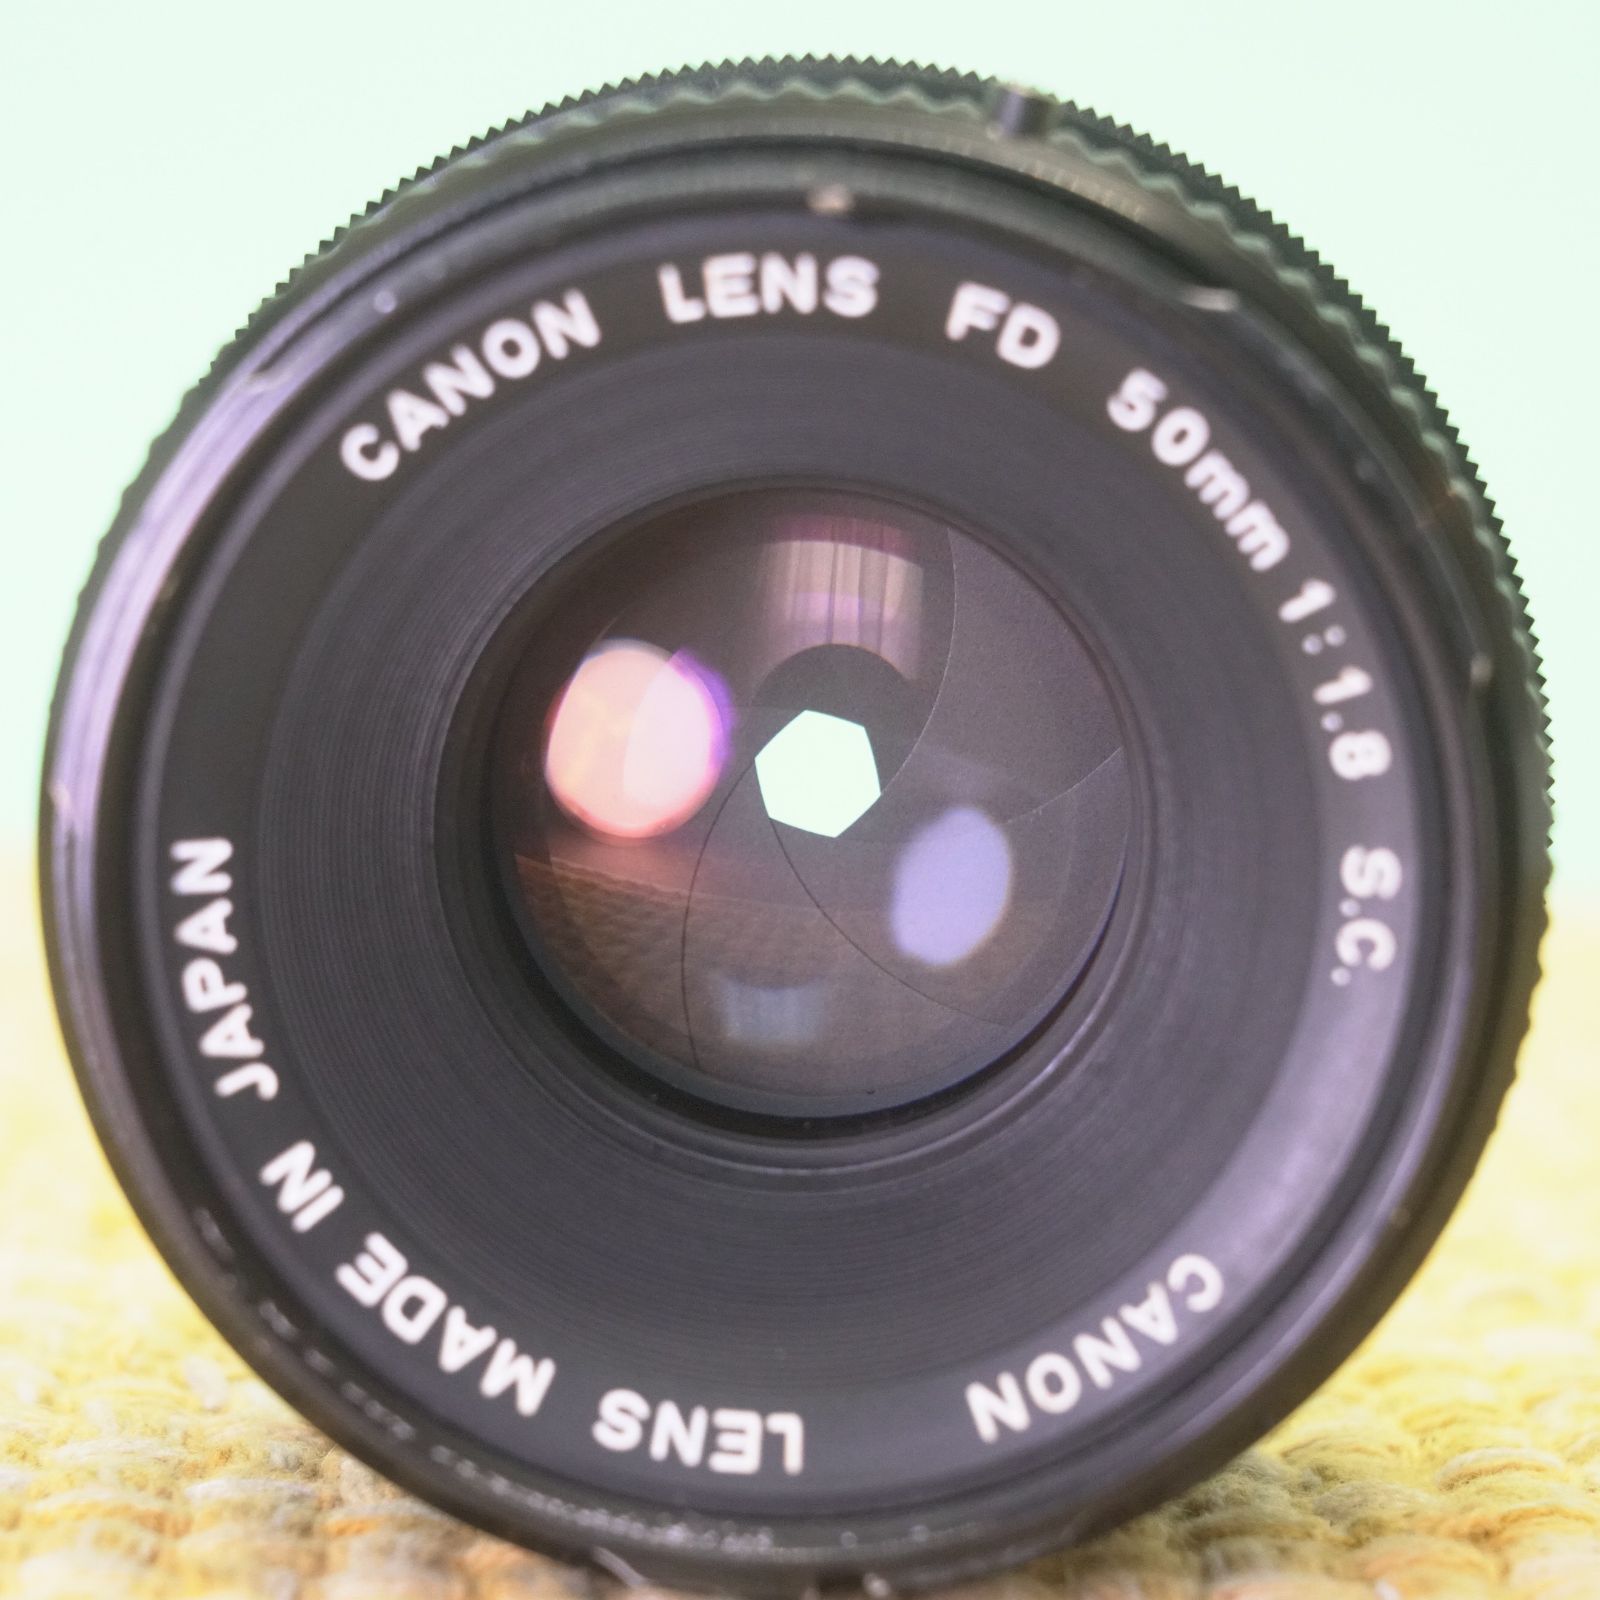 完動品◎Canon AE-1 プログラム x 50mm F1.8 フィルムカメラ